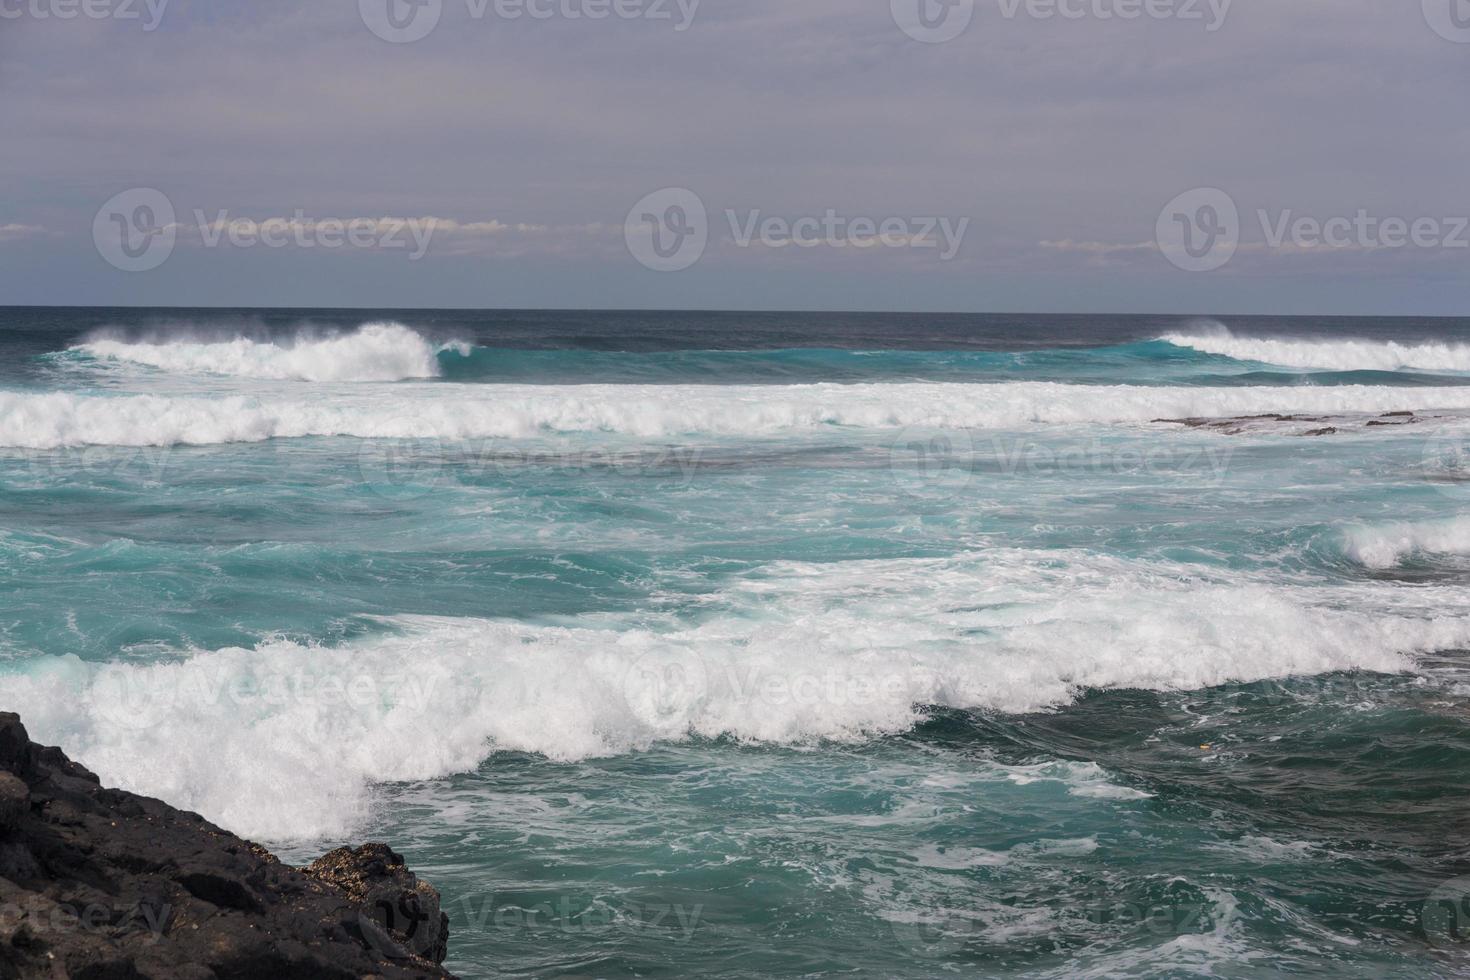 turbulenta havsvågor med vitt skum slår kuststenar foto